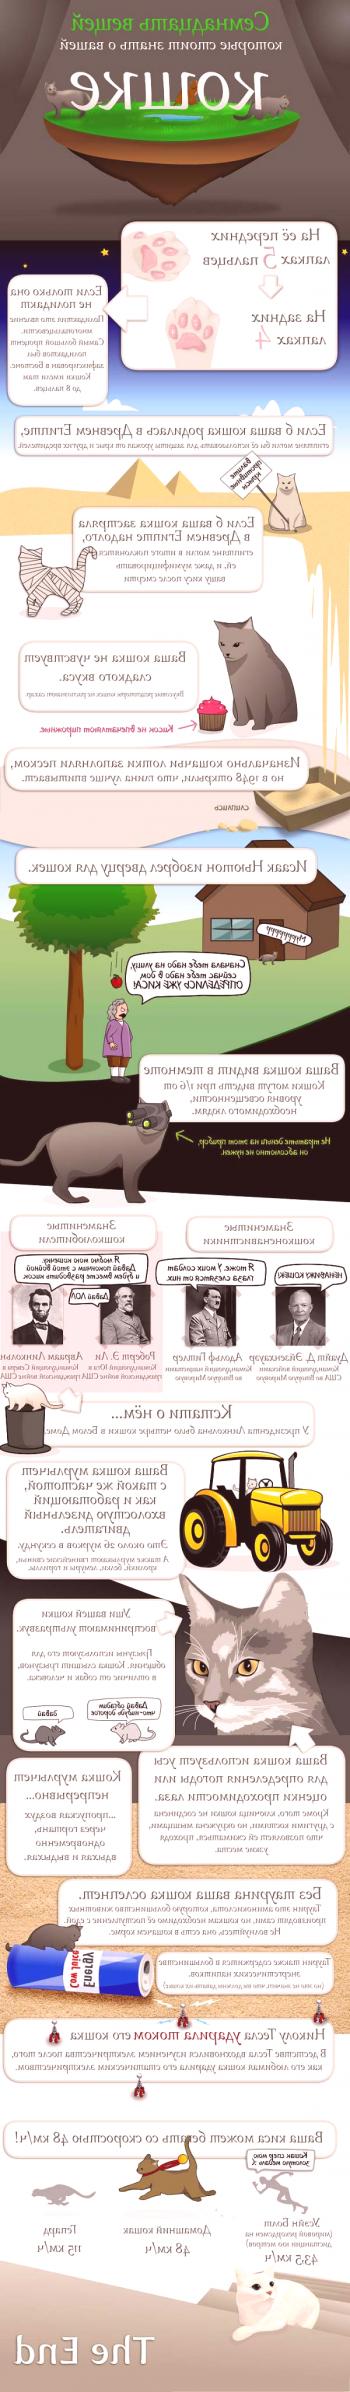 17 hechos que necesitas saber sobre gatos | Datos interesantes sobre los gatos en la foto.